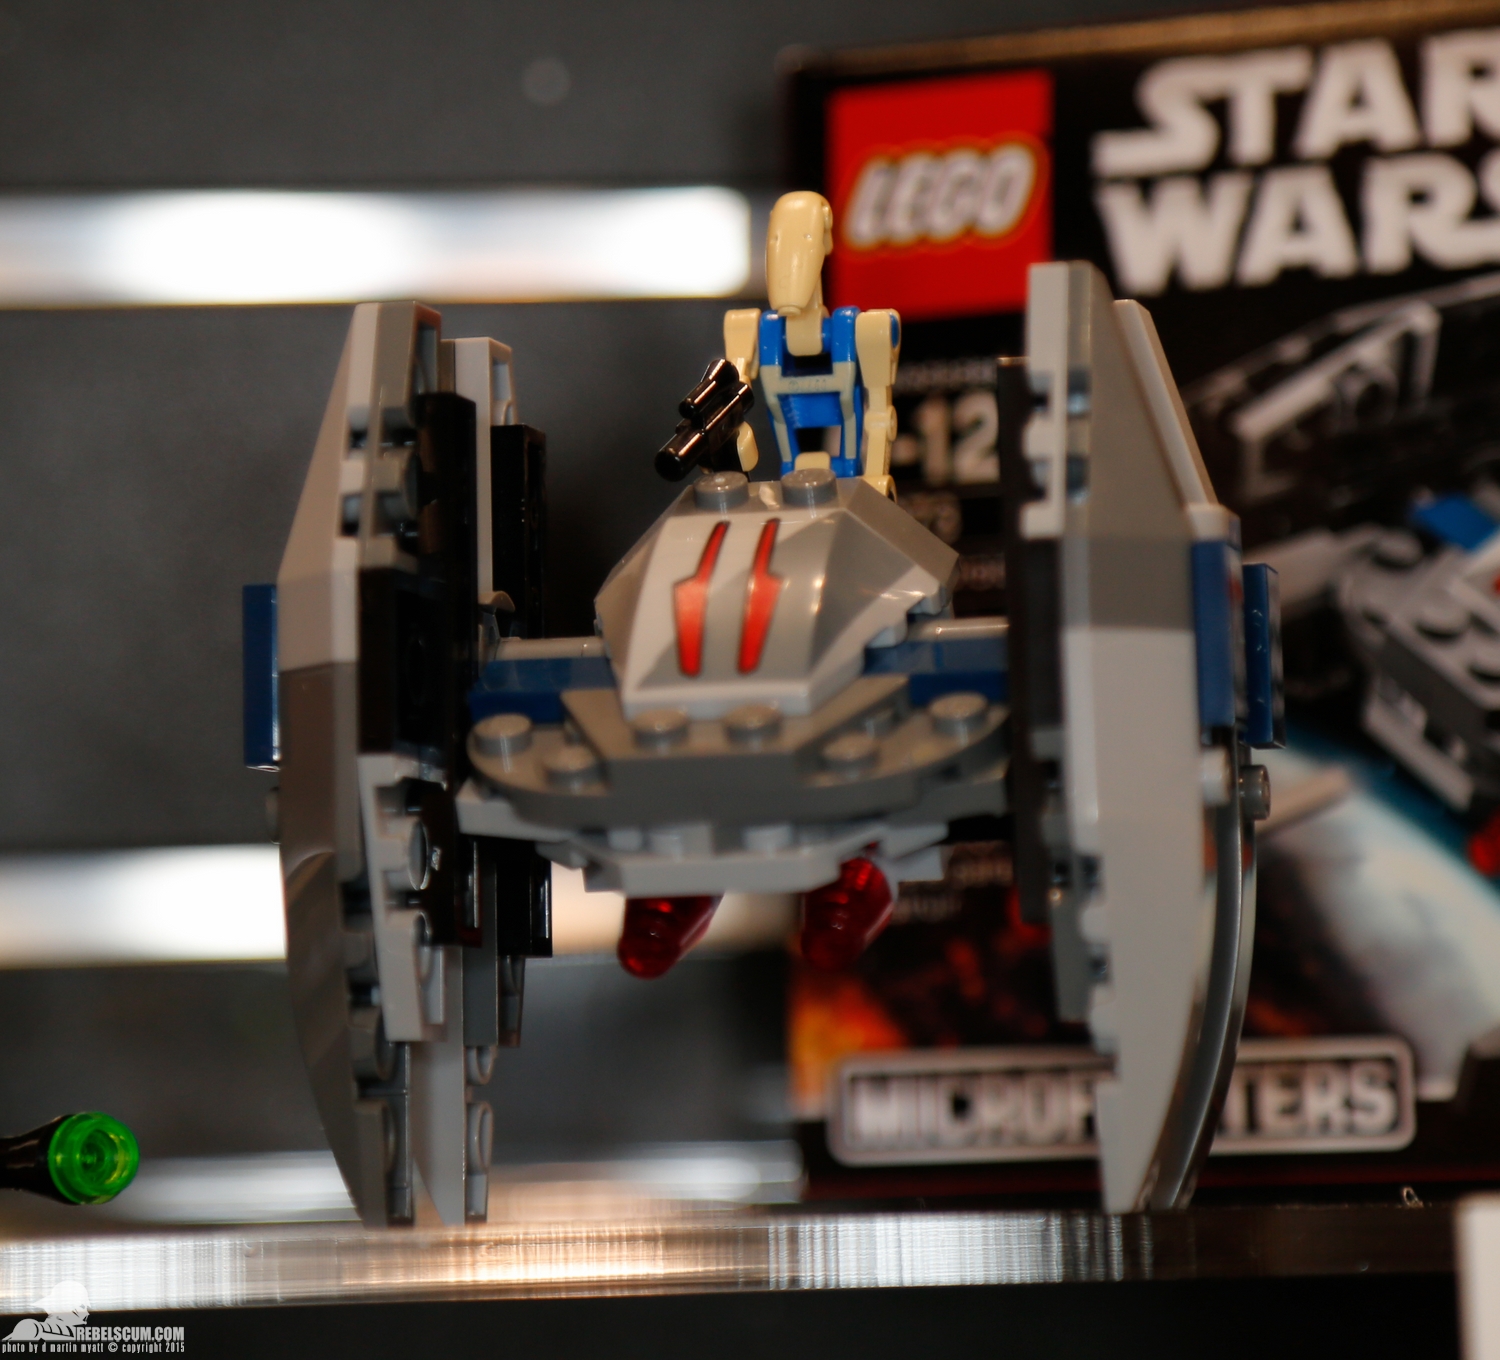 2015-International-Toy-Fair-Star-Wars-Lego-007.jpg